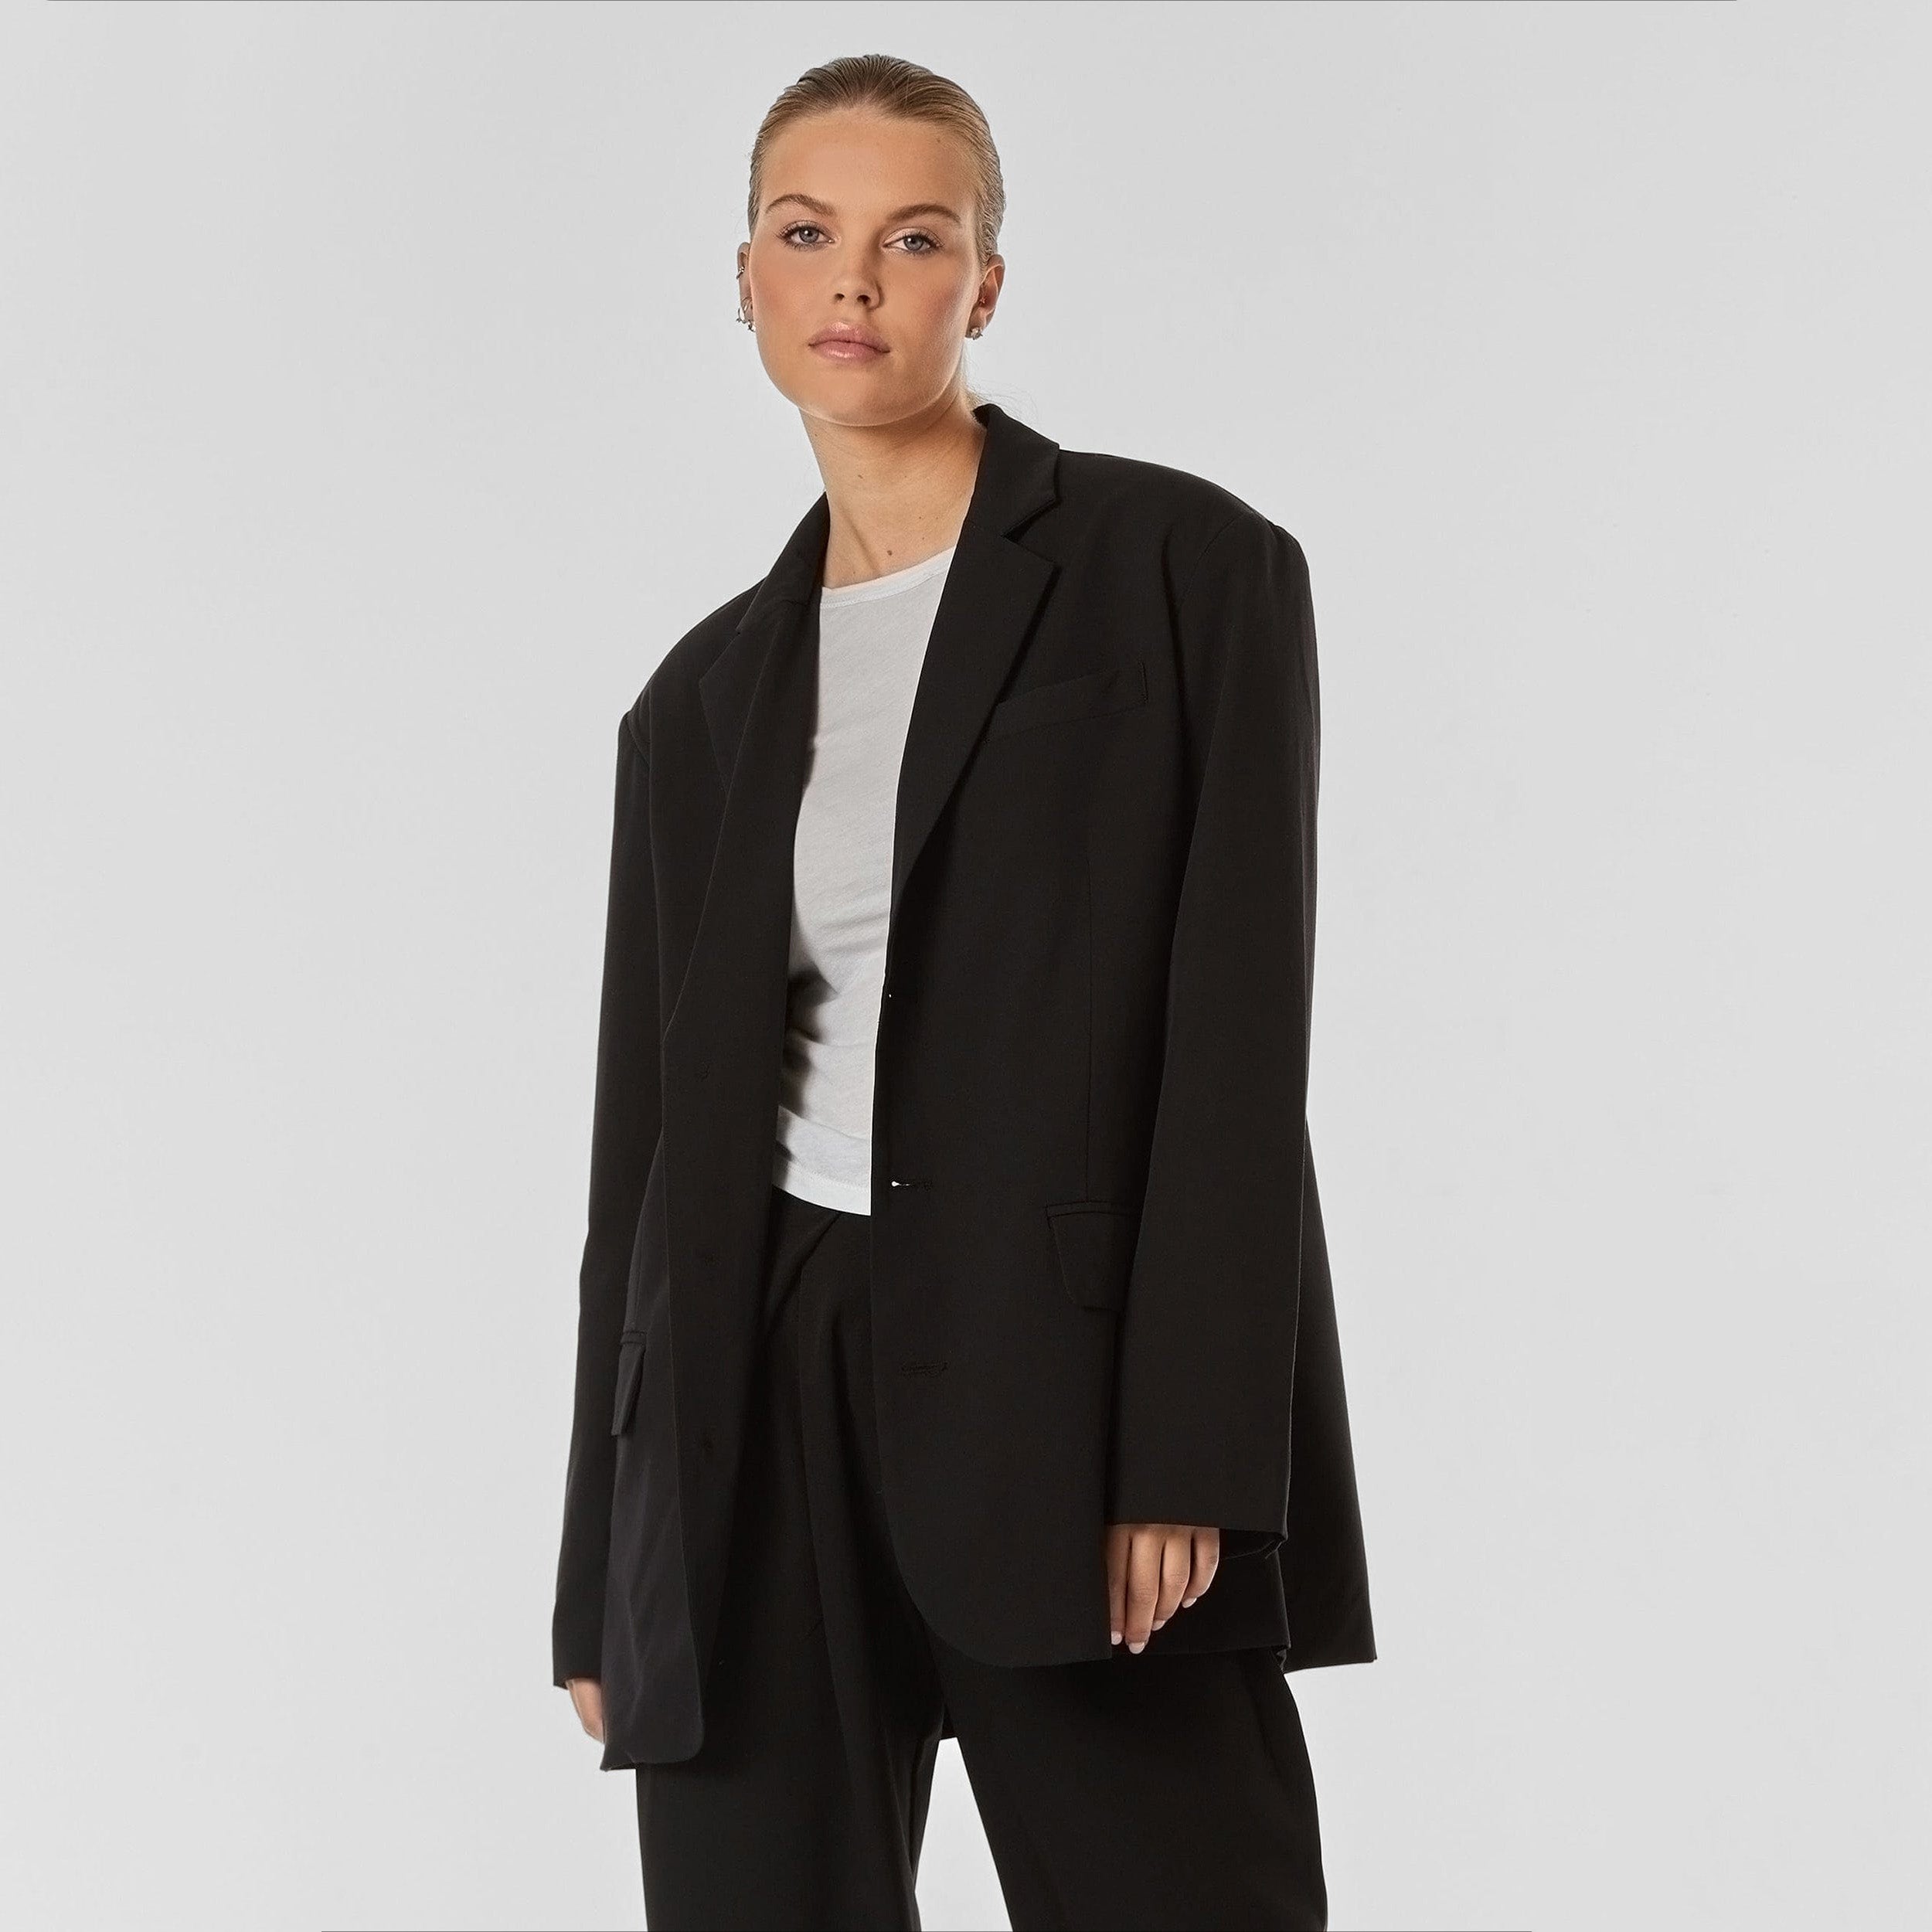 Woman wearing oversized black blazer.